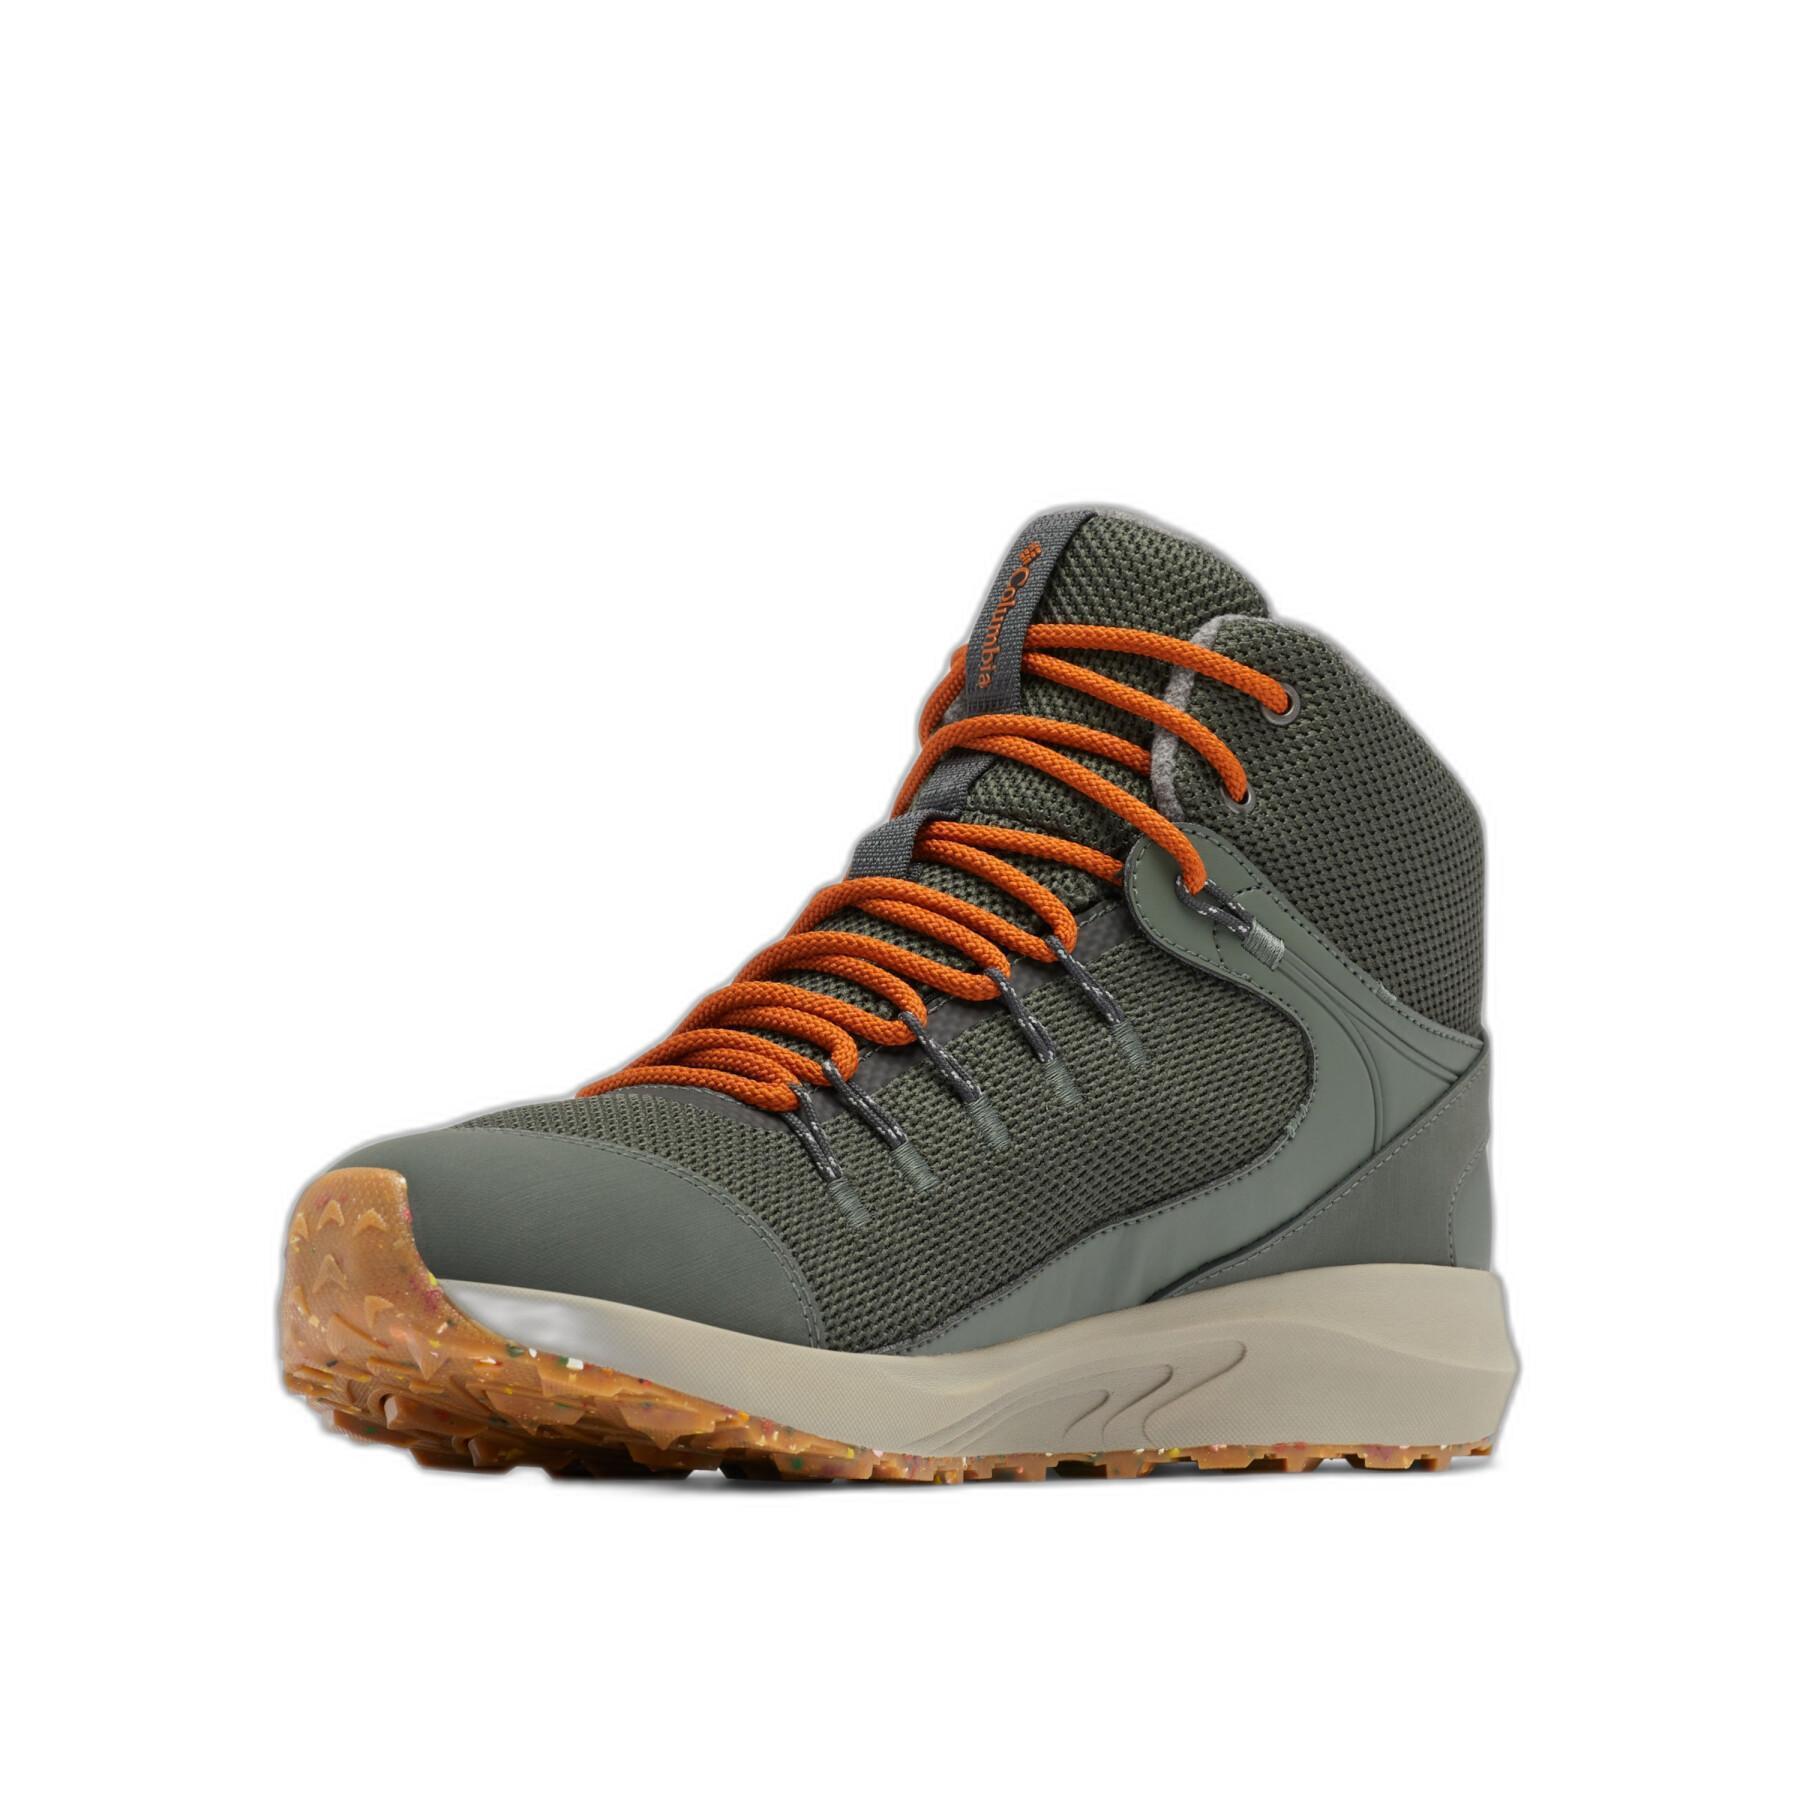 Chaussures de randonnée imperméables Columbia Trailstorm™ Mid Omni Heat™